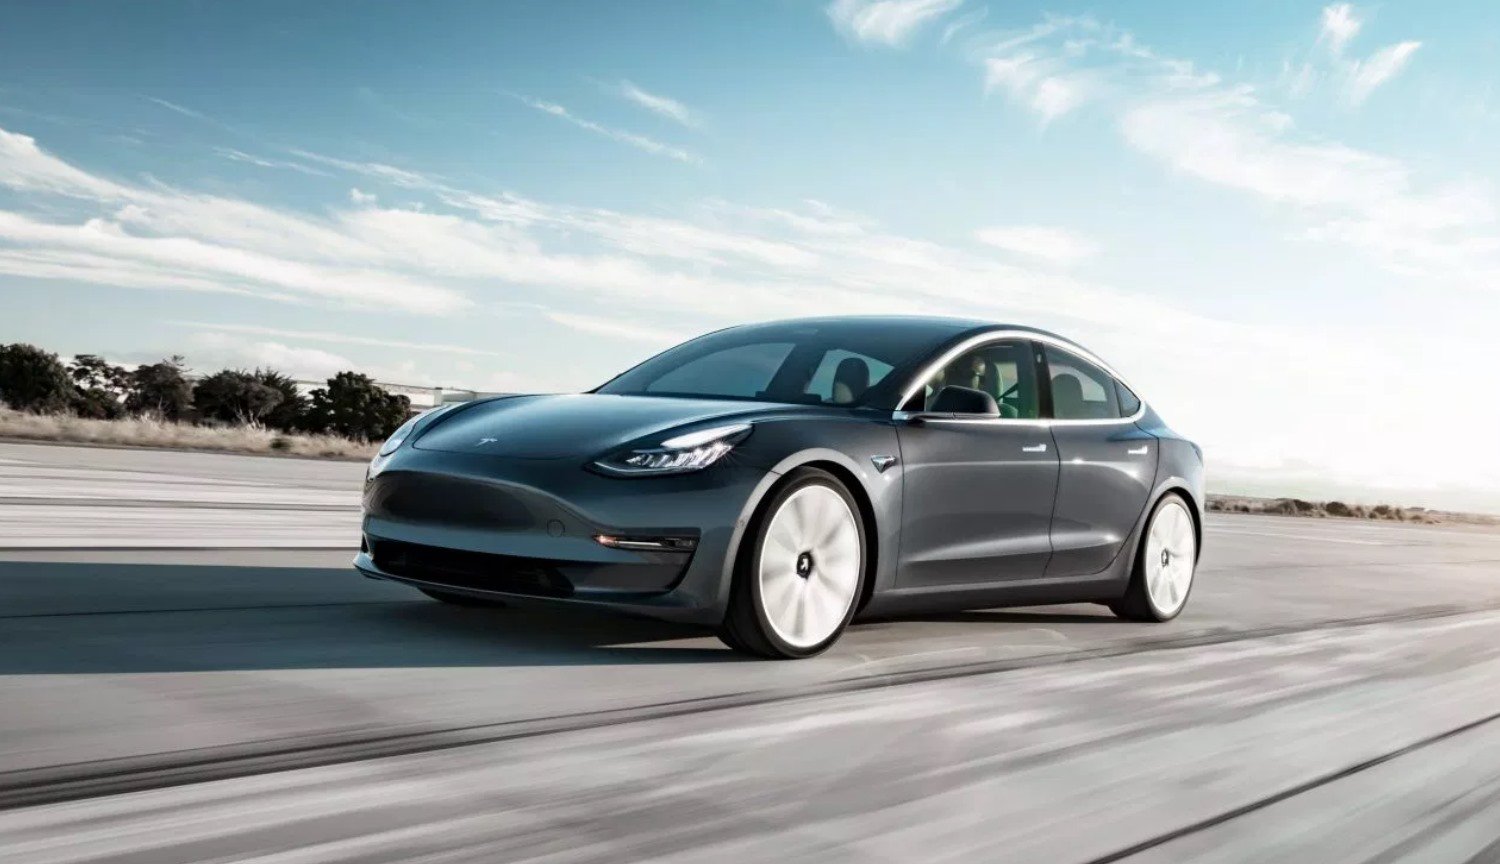 Danach hat ilon Musk angekündigt, die Veröffentlichung der Billigen Version des Tesla Model 3